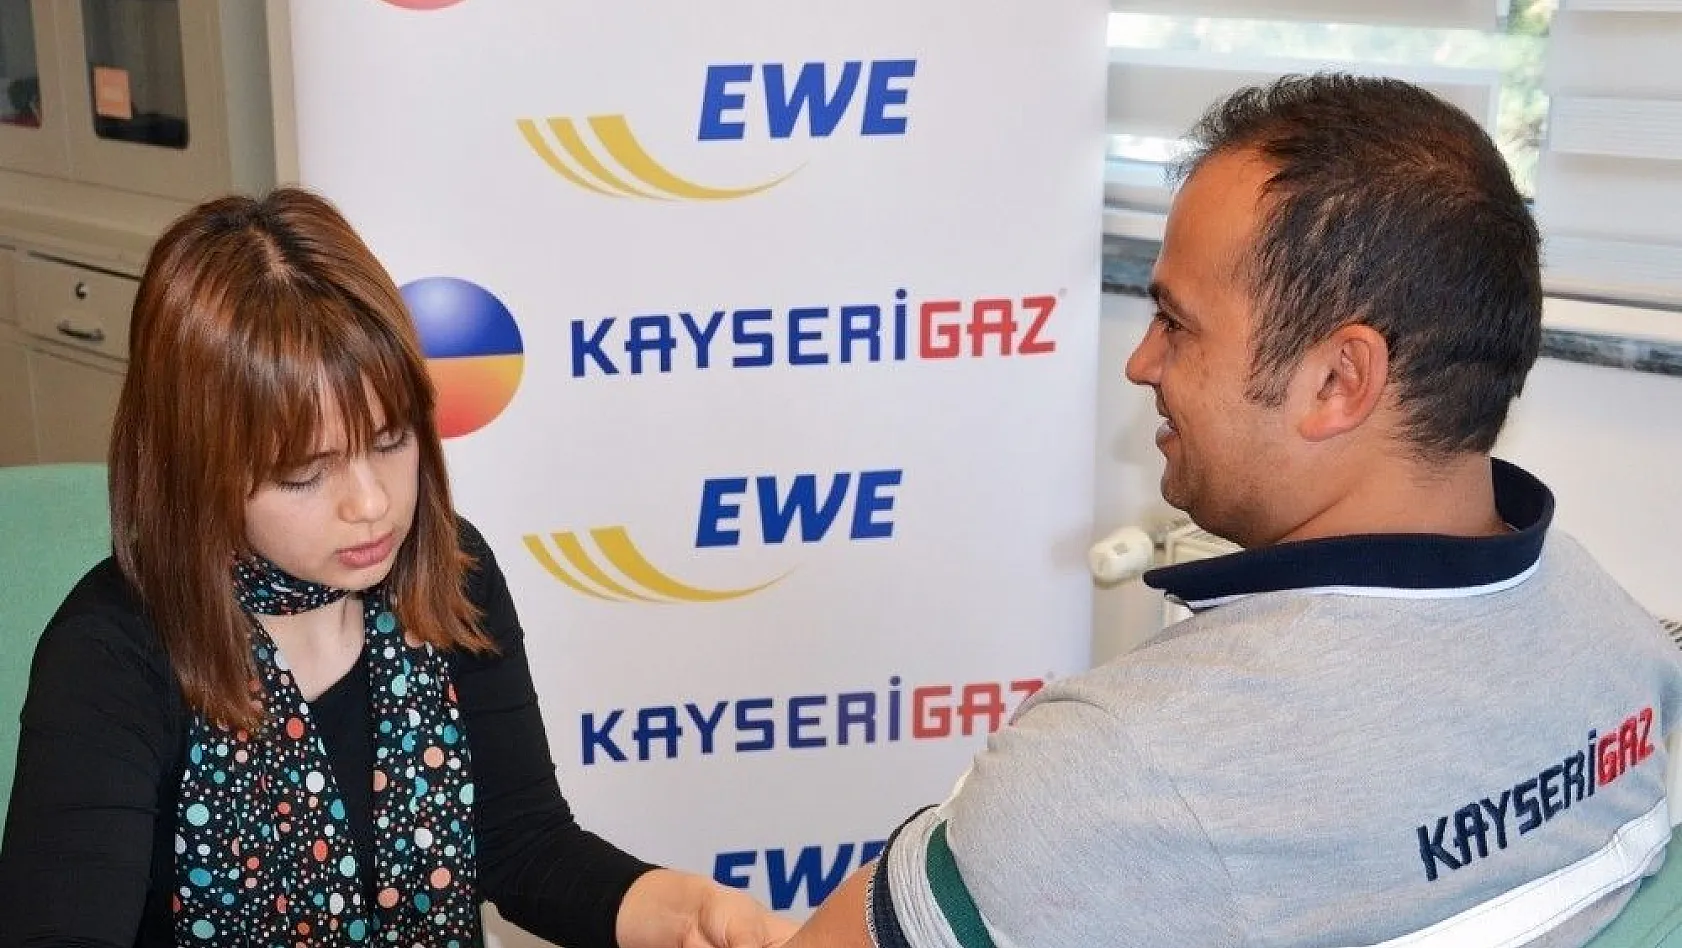 Kaysergaz'dan çalışanlarına sağlık kontrolü
